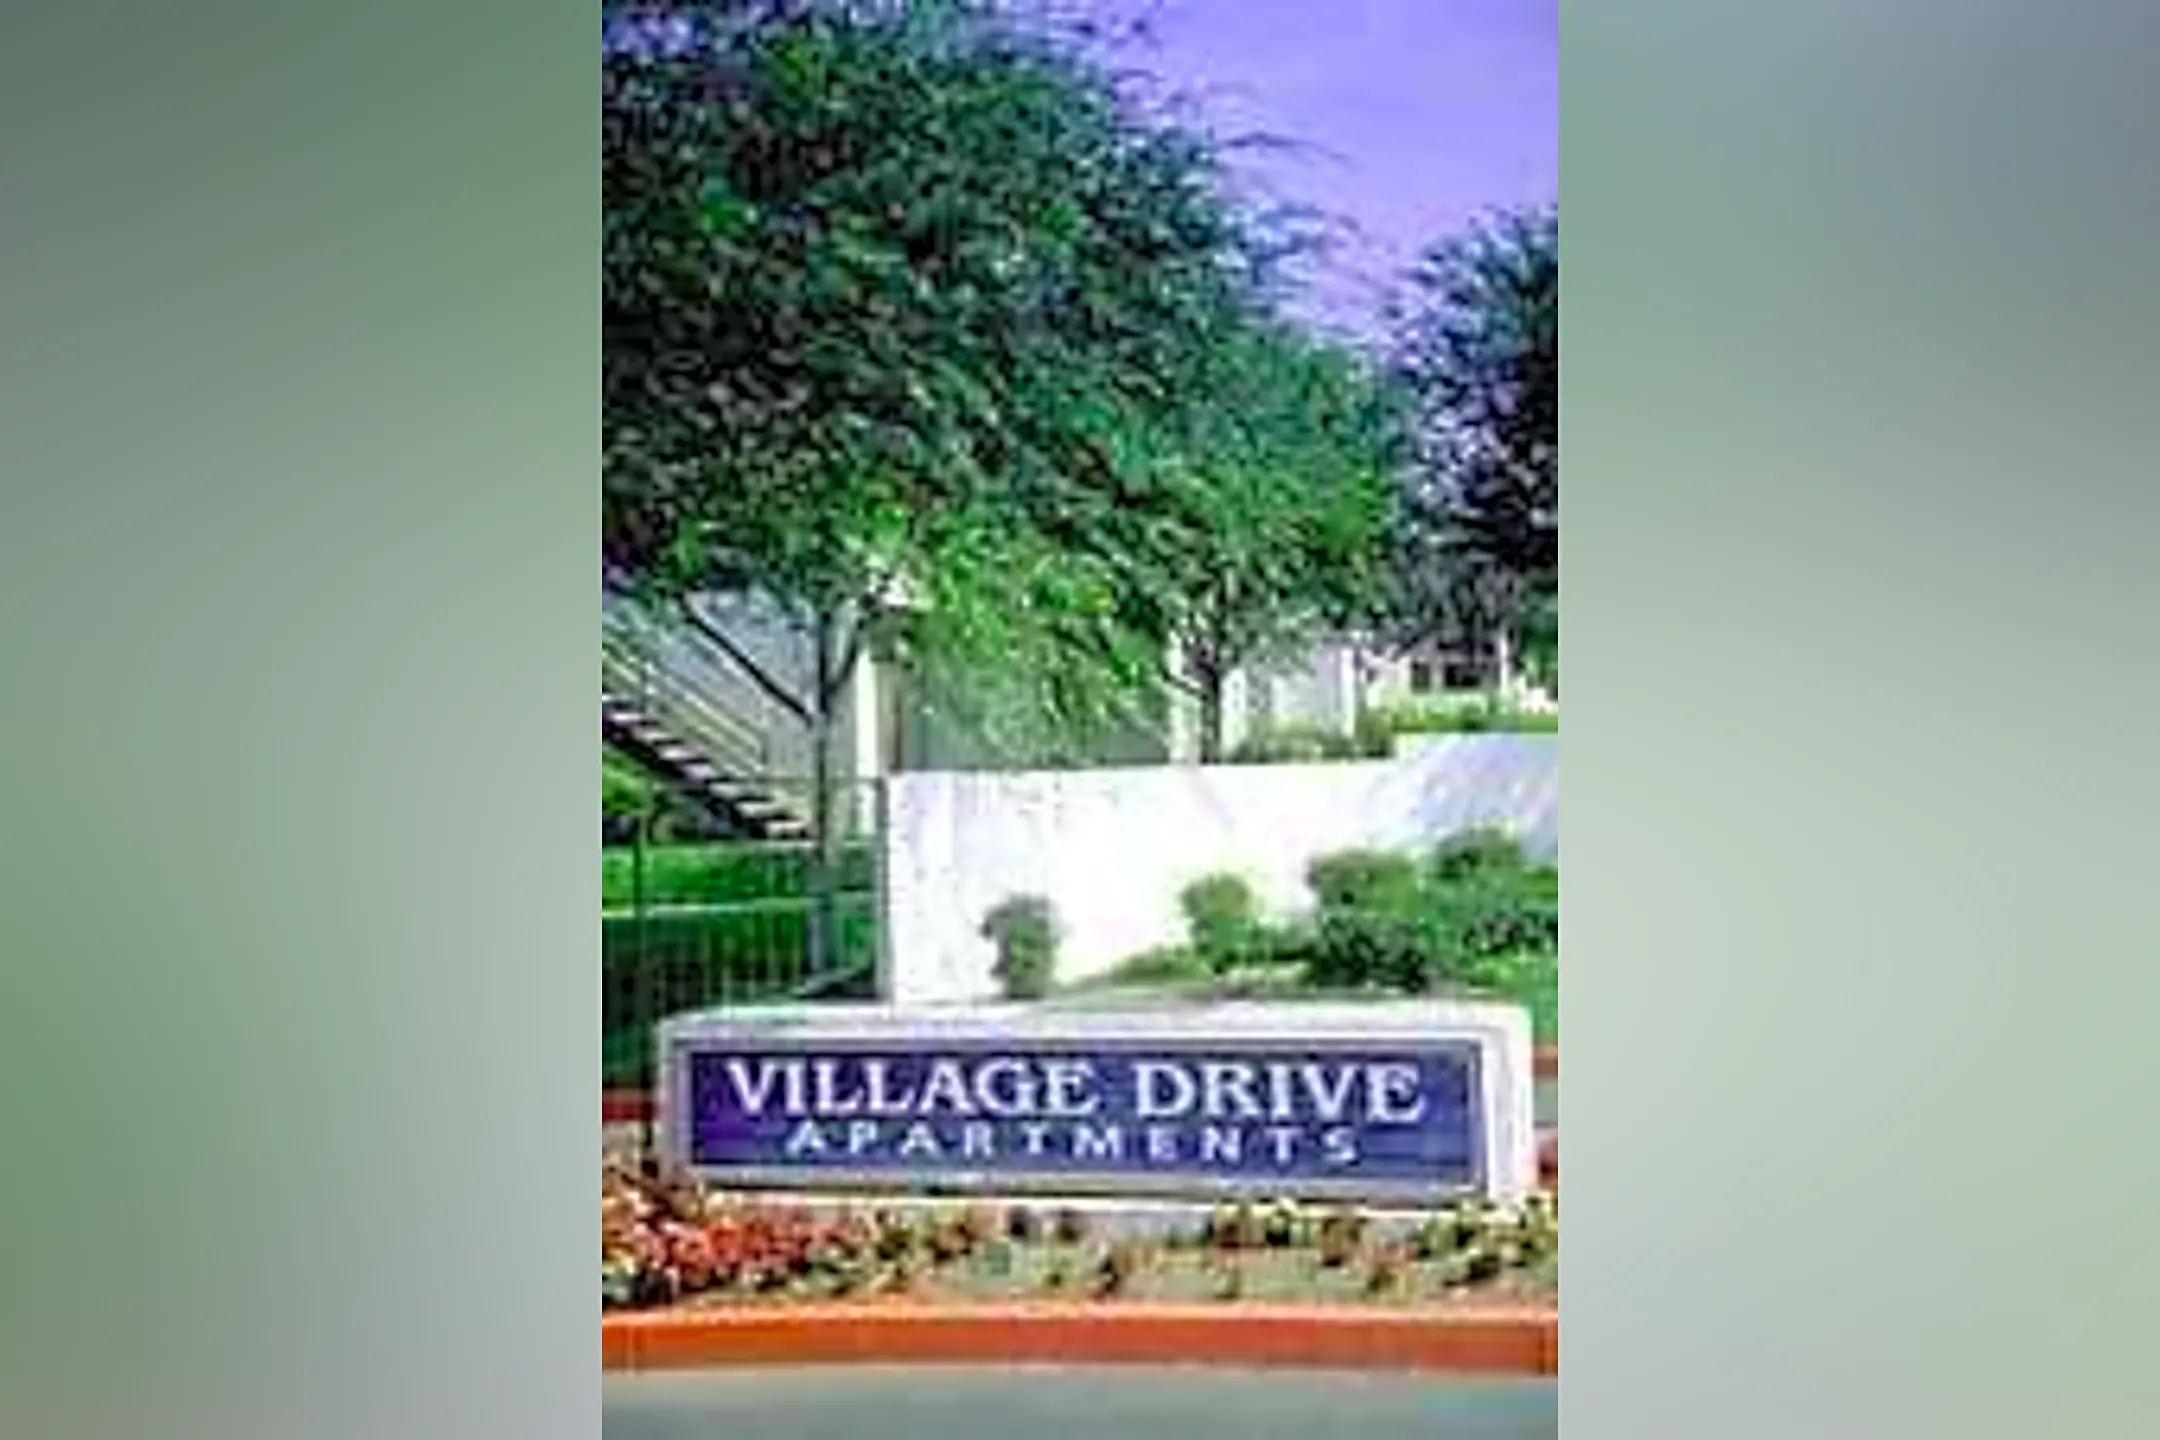 Village drive apartments fontana ca